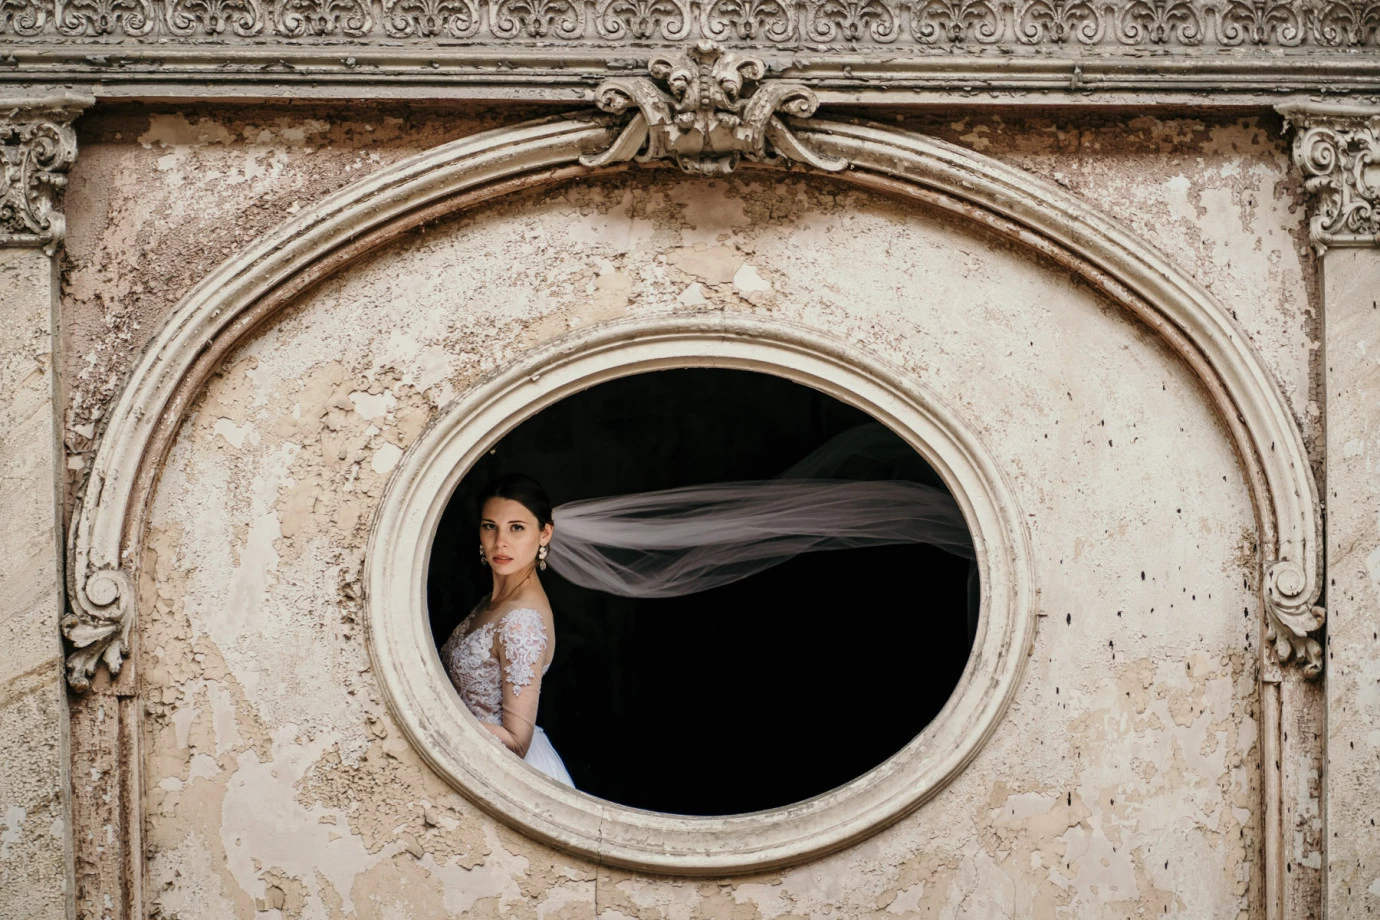 zdjęcia katowice fotograf dawid-szymczak portfolio zdjecia slubne inspiracje wesele plener slubny sesja slubna